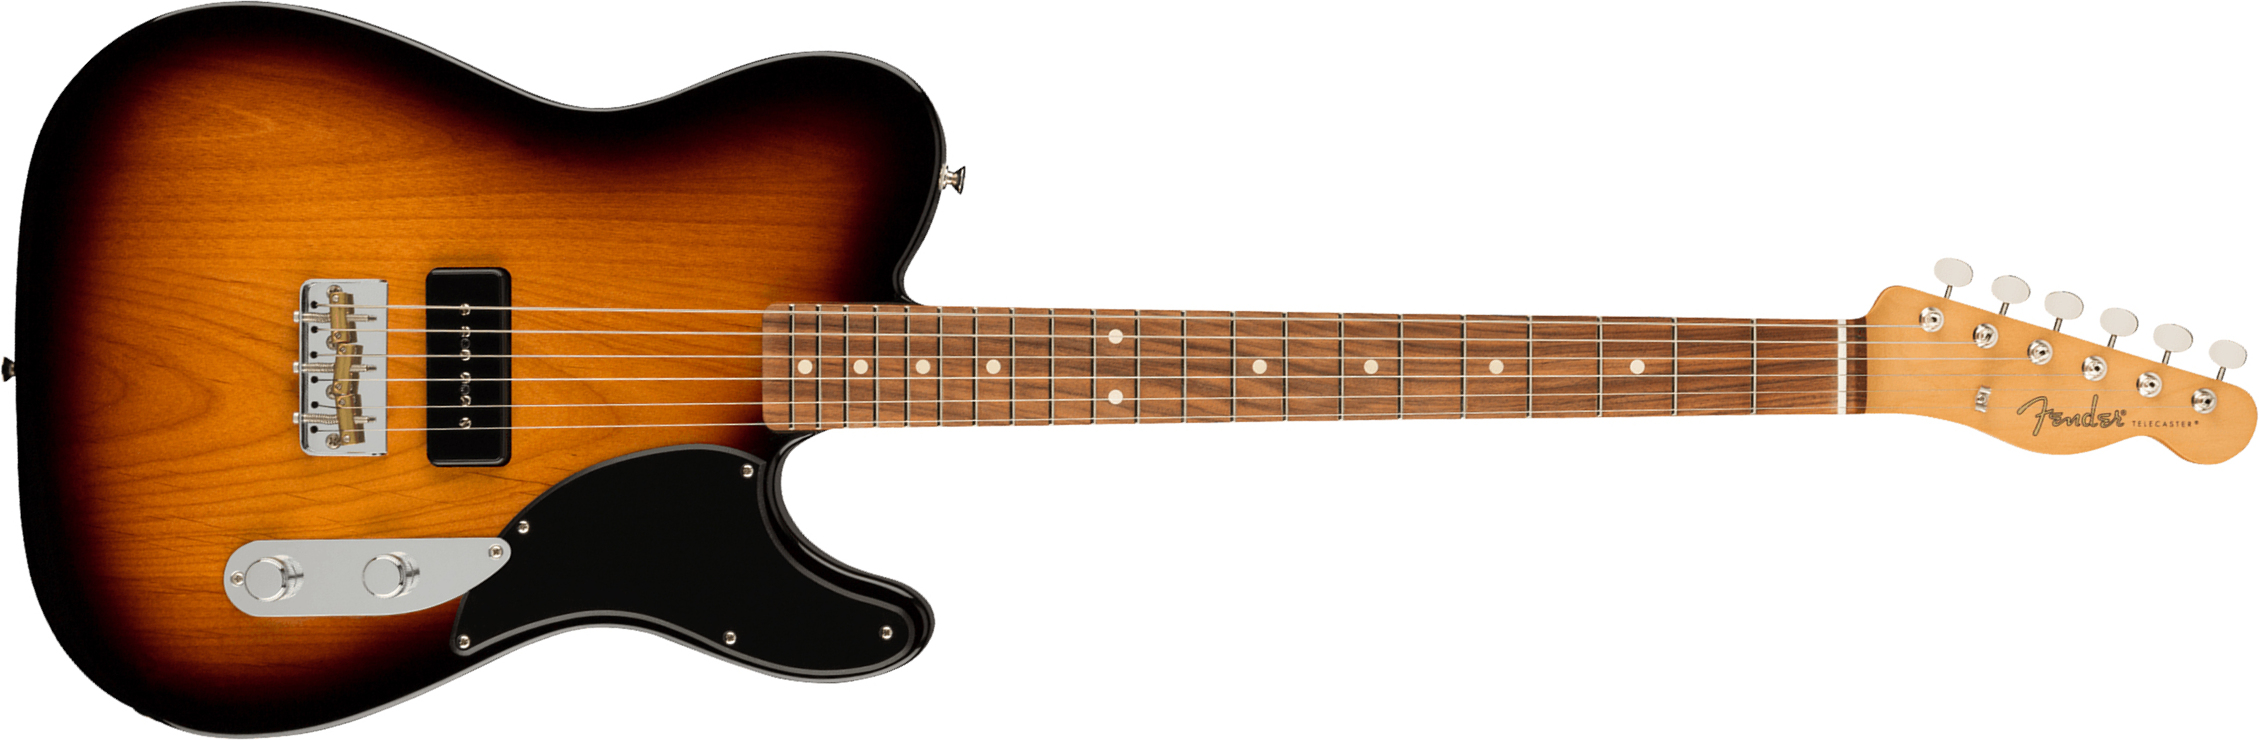 Fender Tele Noventa Mex Pf +housse - 2-color Sunburst - Tel shape electric guitar - Main picture